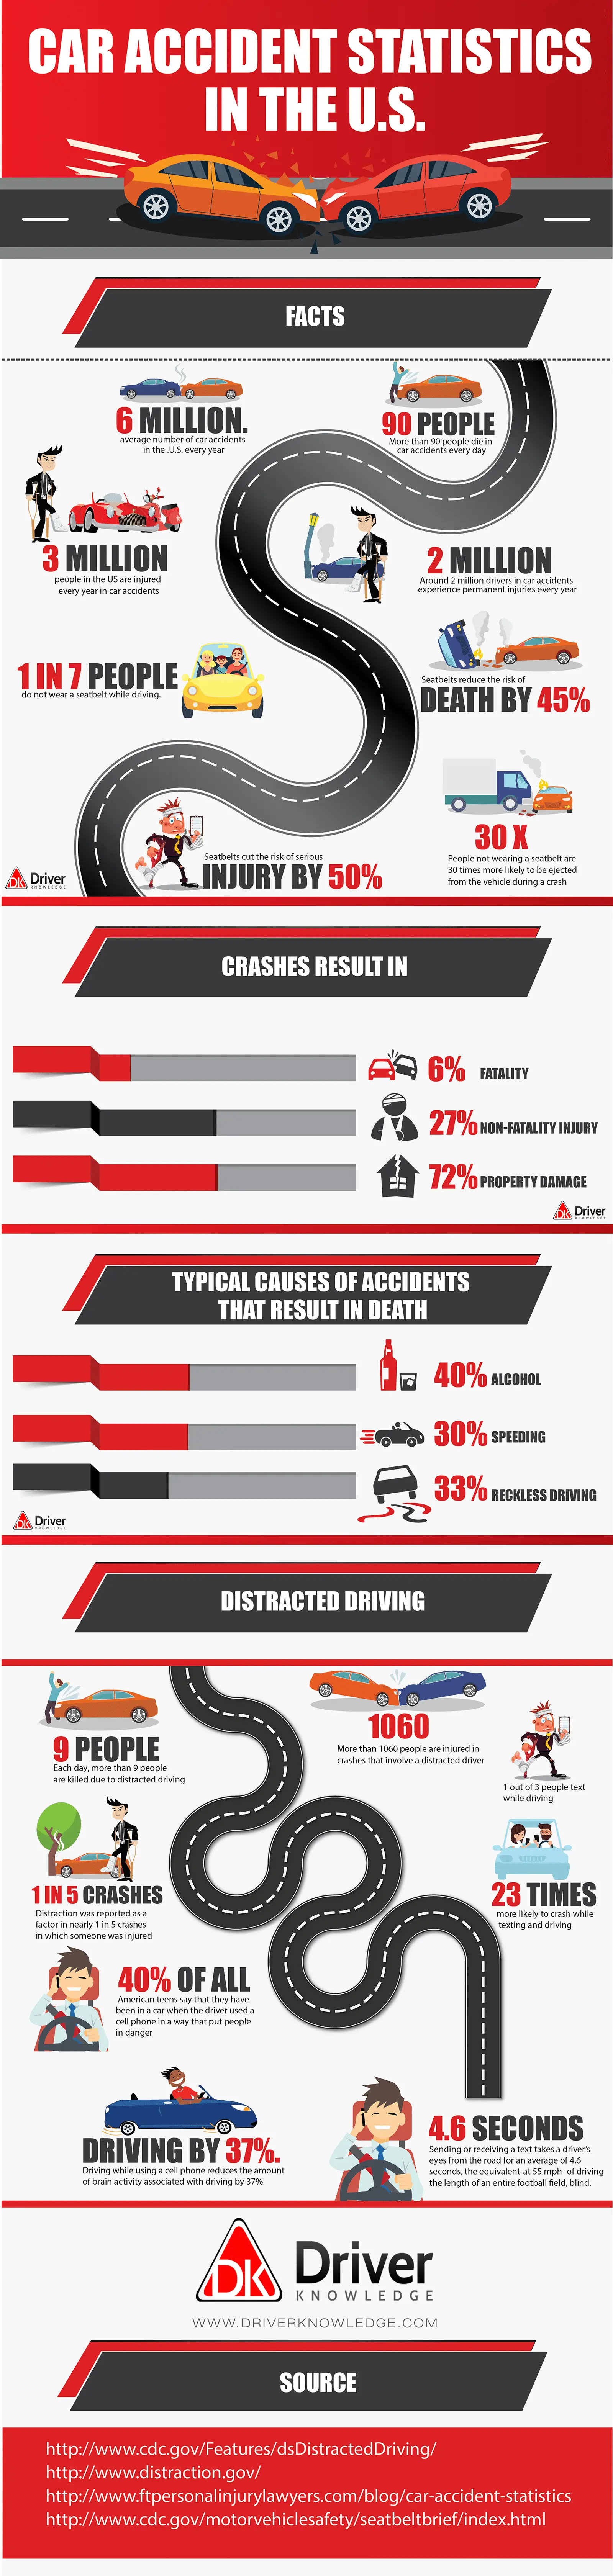 Car accident statistics